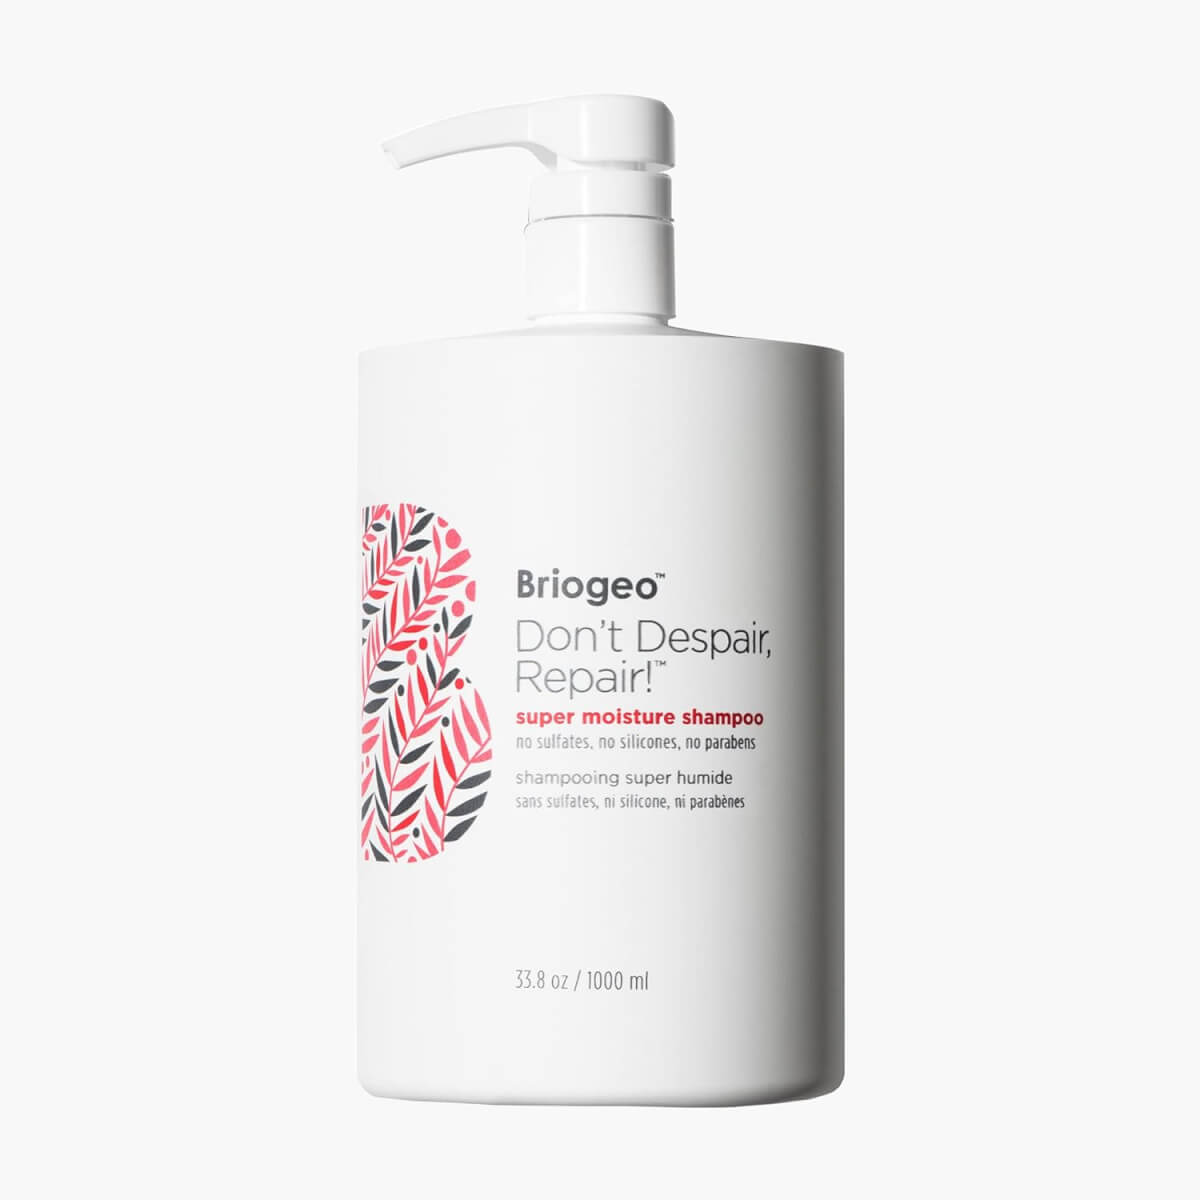 Briogeo Don’t Despair, Repair! Super Moisture Shampoo